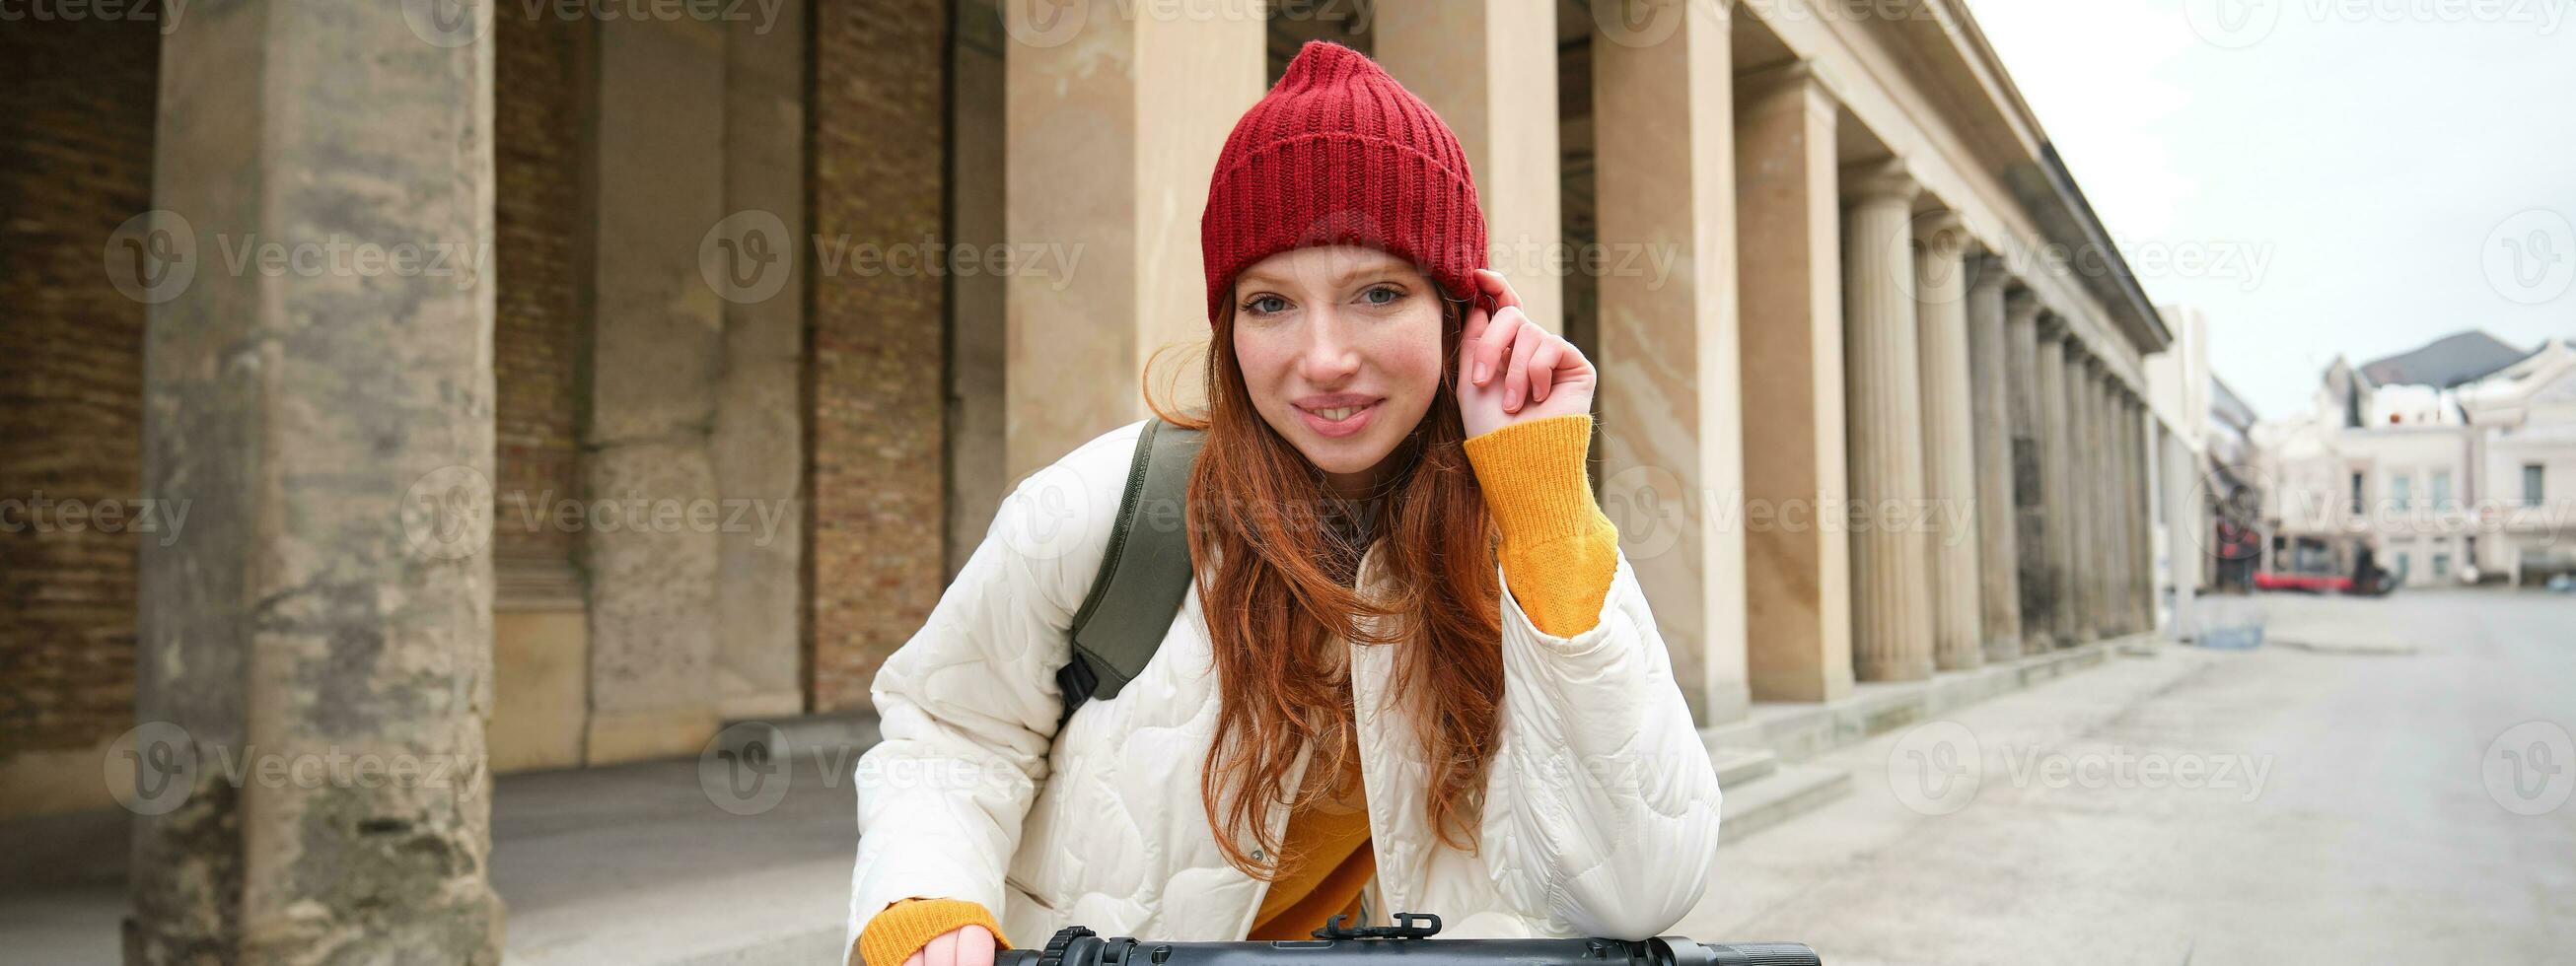 sorridente testa Rossa europeo ragazza unità pubblico scooter, turista esplora città, cavalcate nel città centro foto